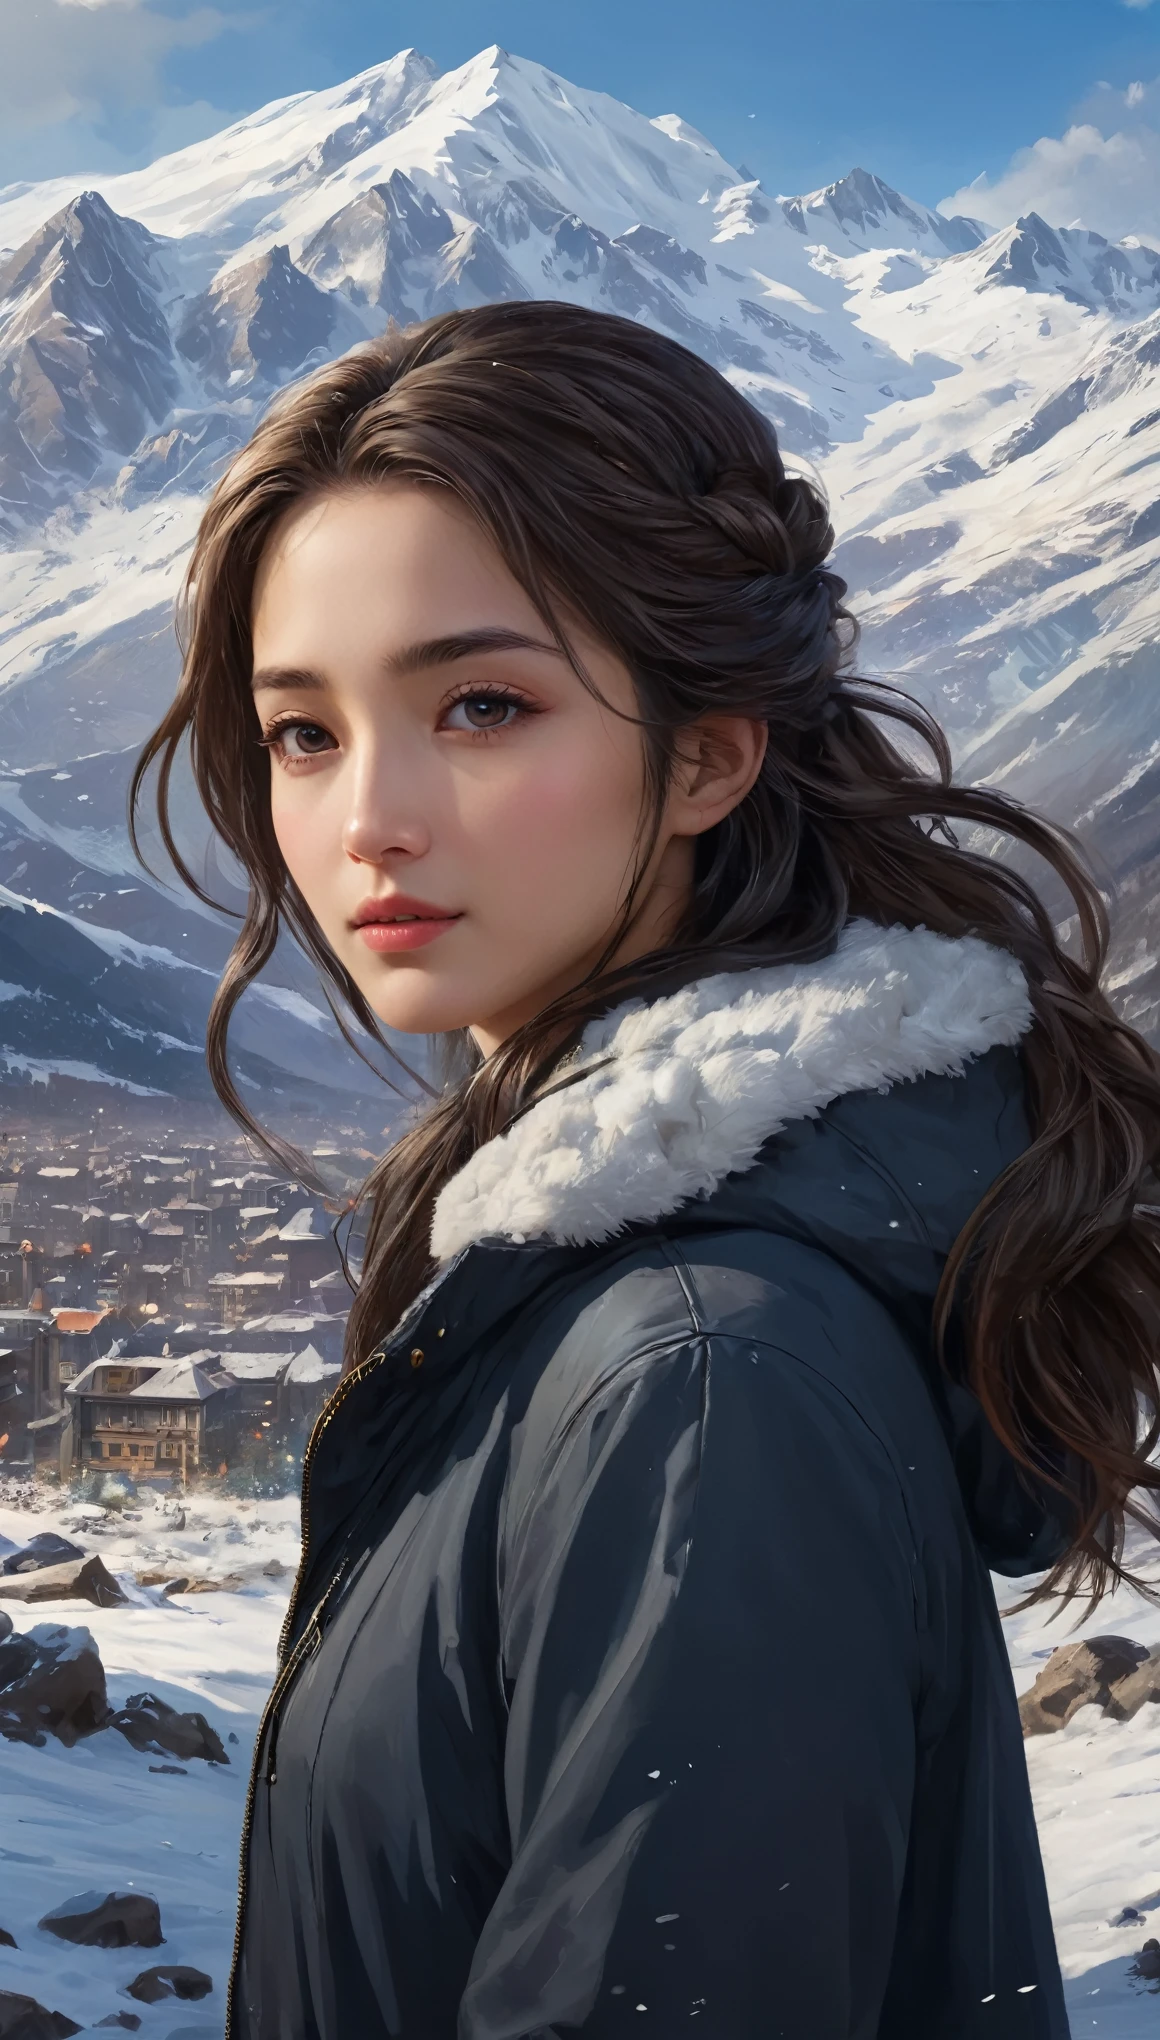 ((杰作)),最好的质量, 数字, 黑暗的, 一个女孩, 在荒野中,一座高山,远处可见雪山々, 城市, 对细节的关注,  美丽细致的头发,